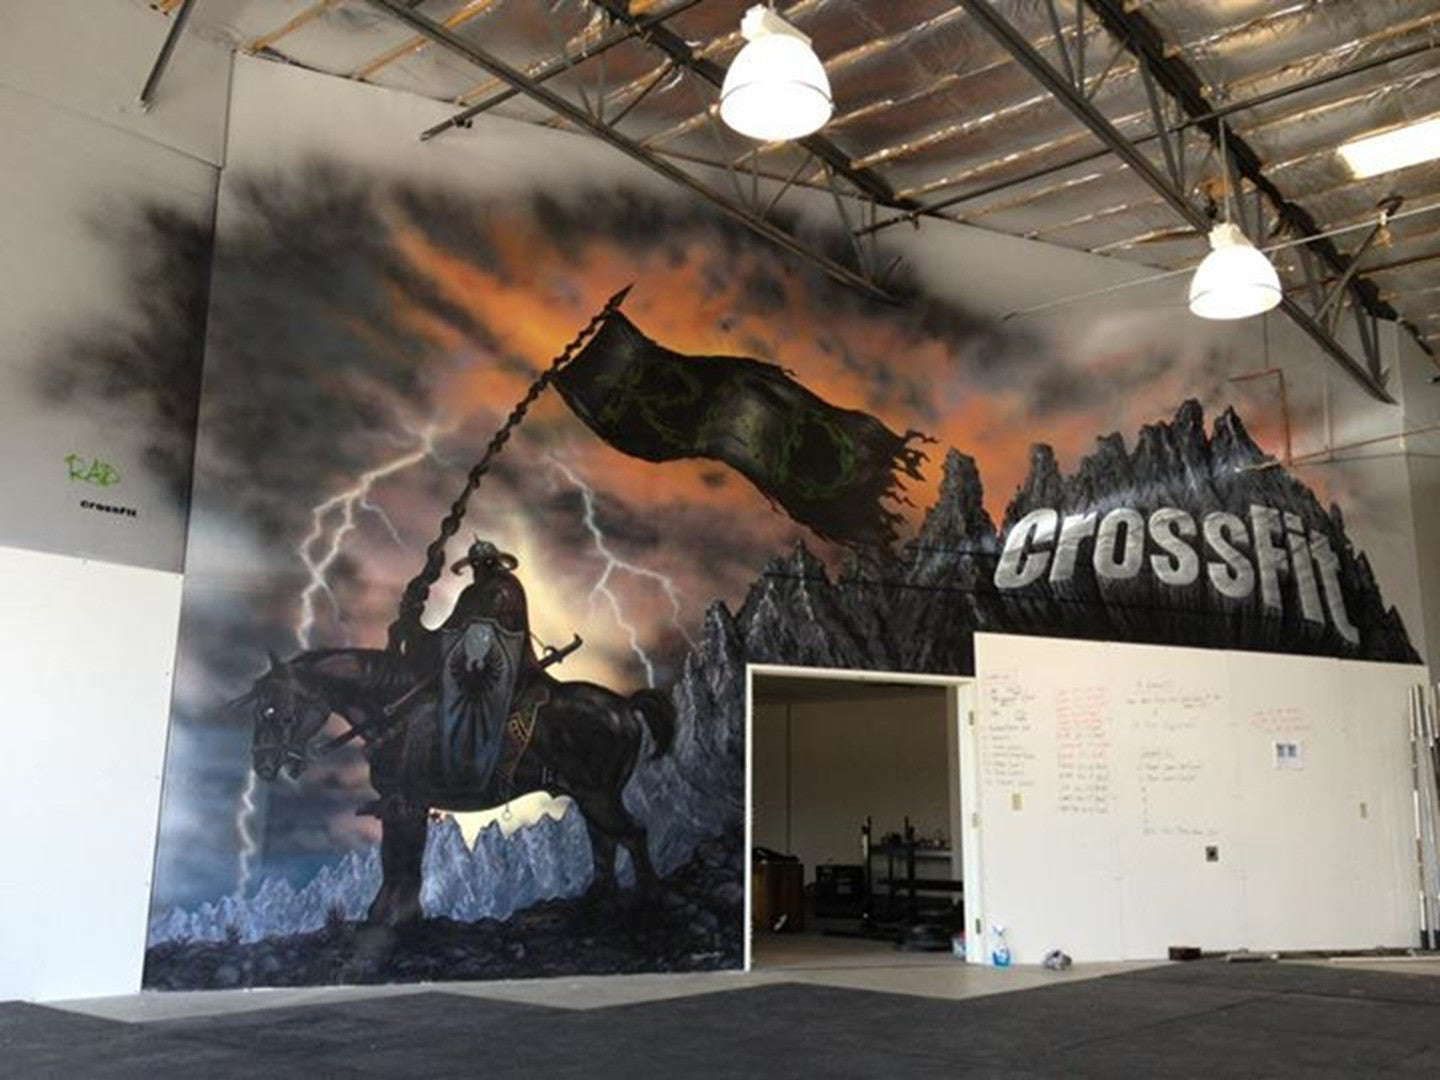 2012 Crossfit Mural